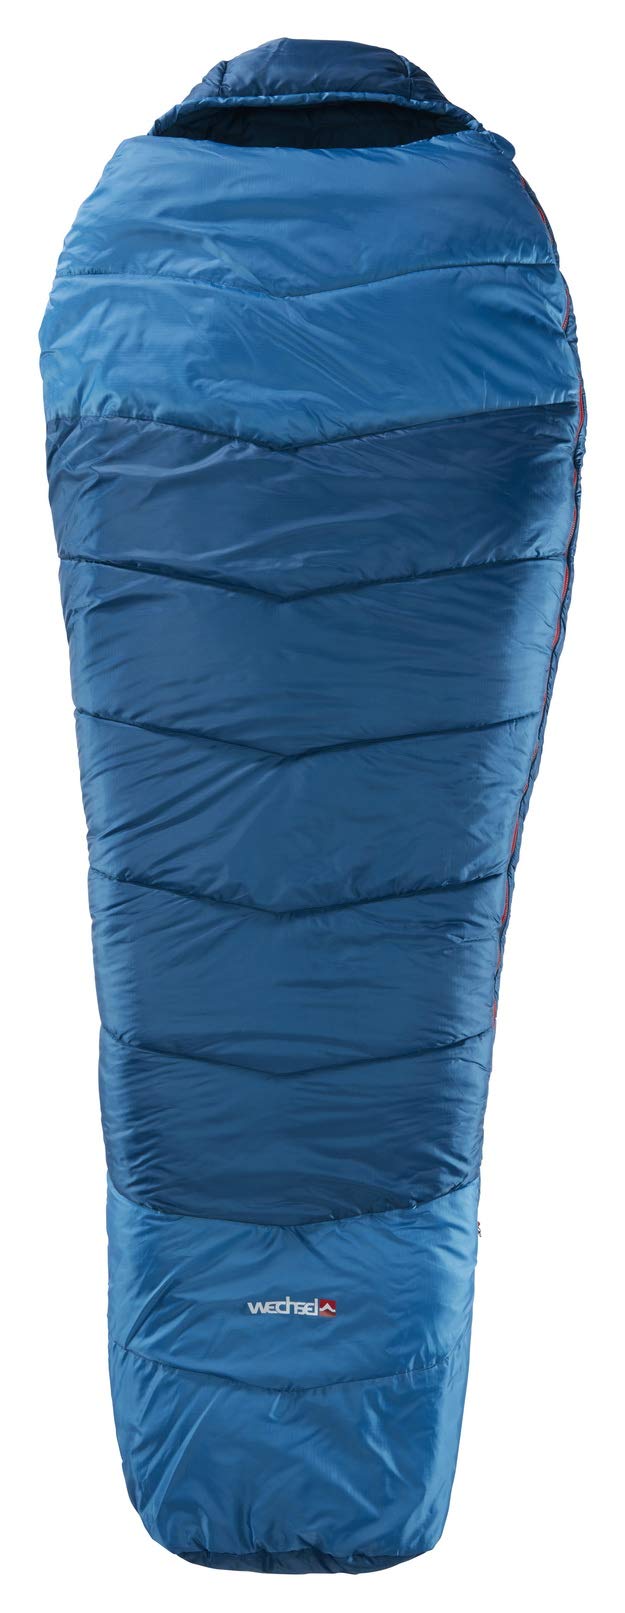 Wechsel Tents DREAMCATCHER (0° L) – Schlafsack